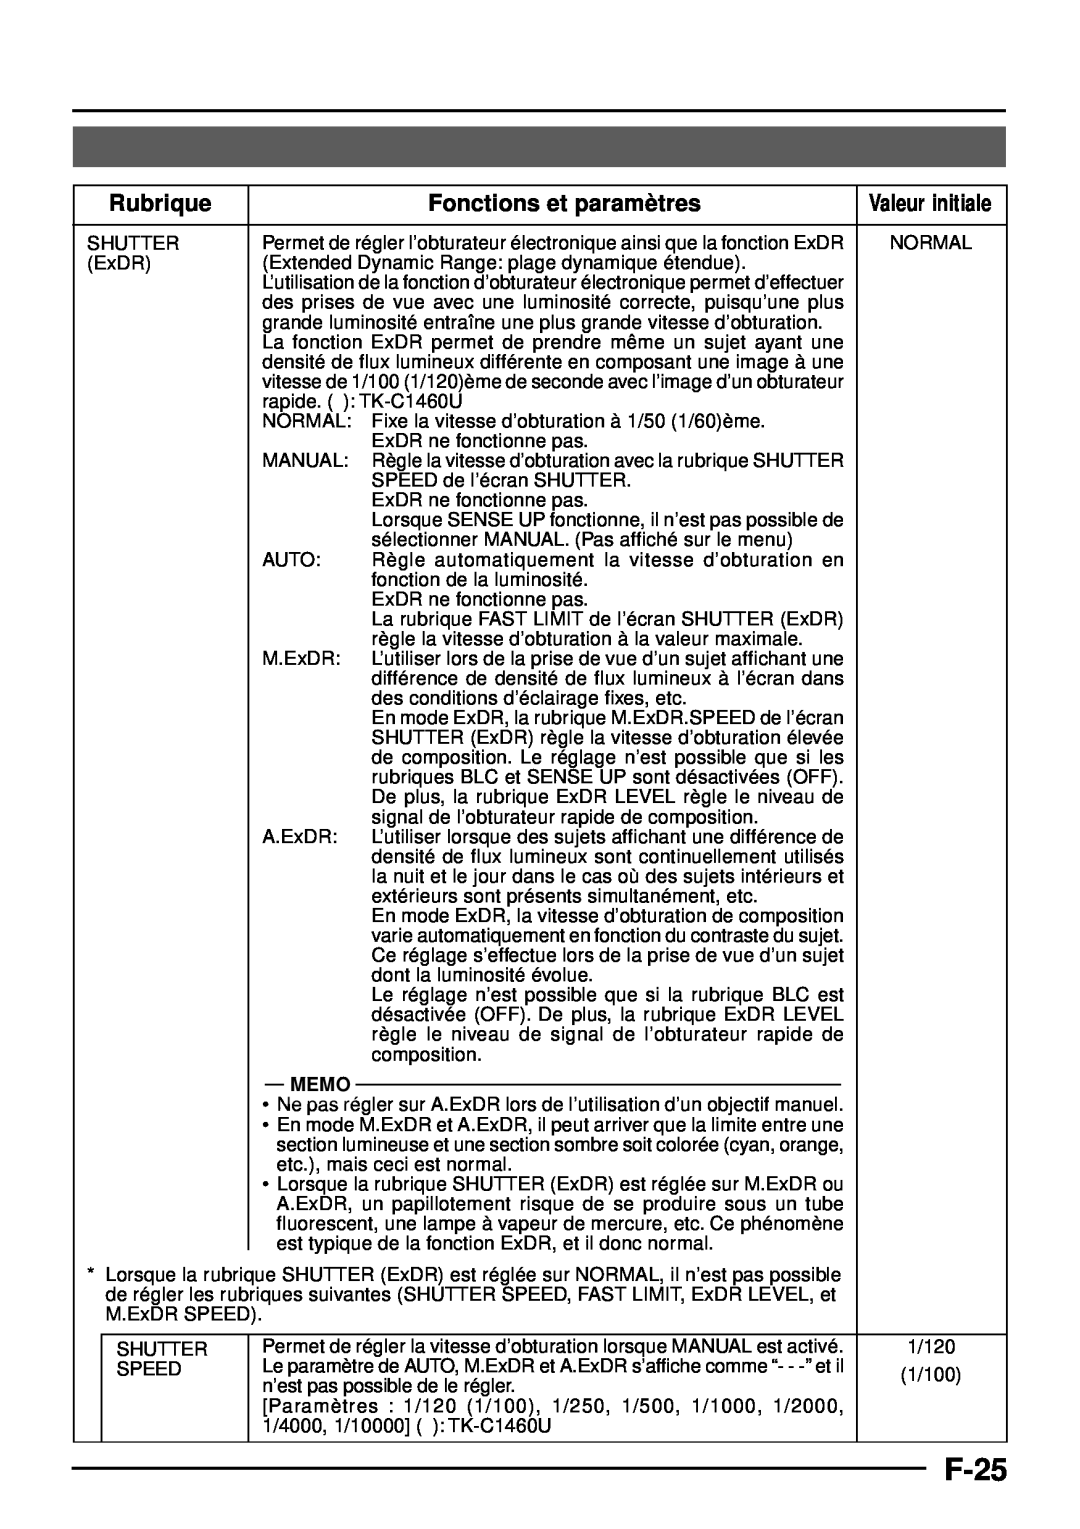 JVC TK-C1460 manual F-25, Rubrique, Fonctions et paramè tres, Memo, Valeur initiale 